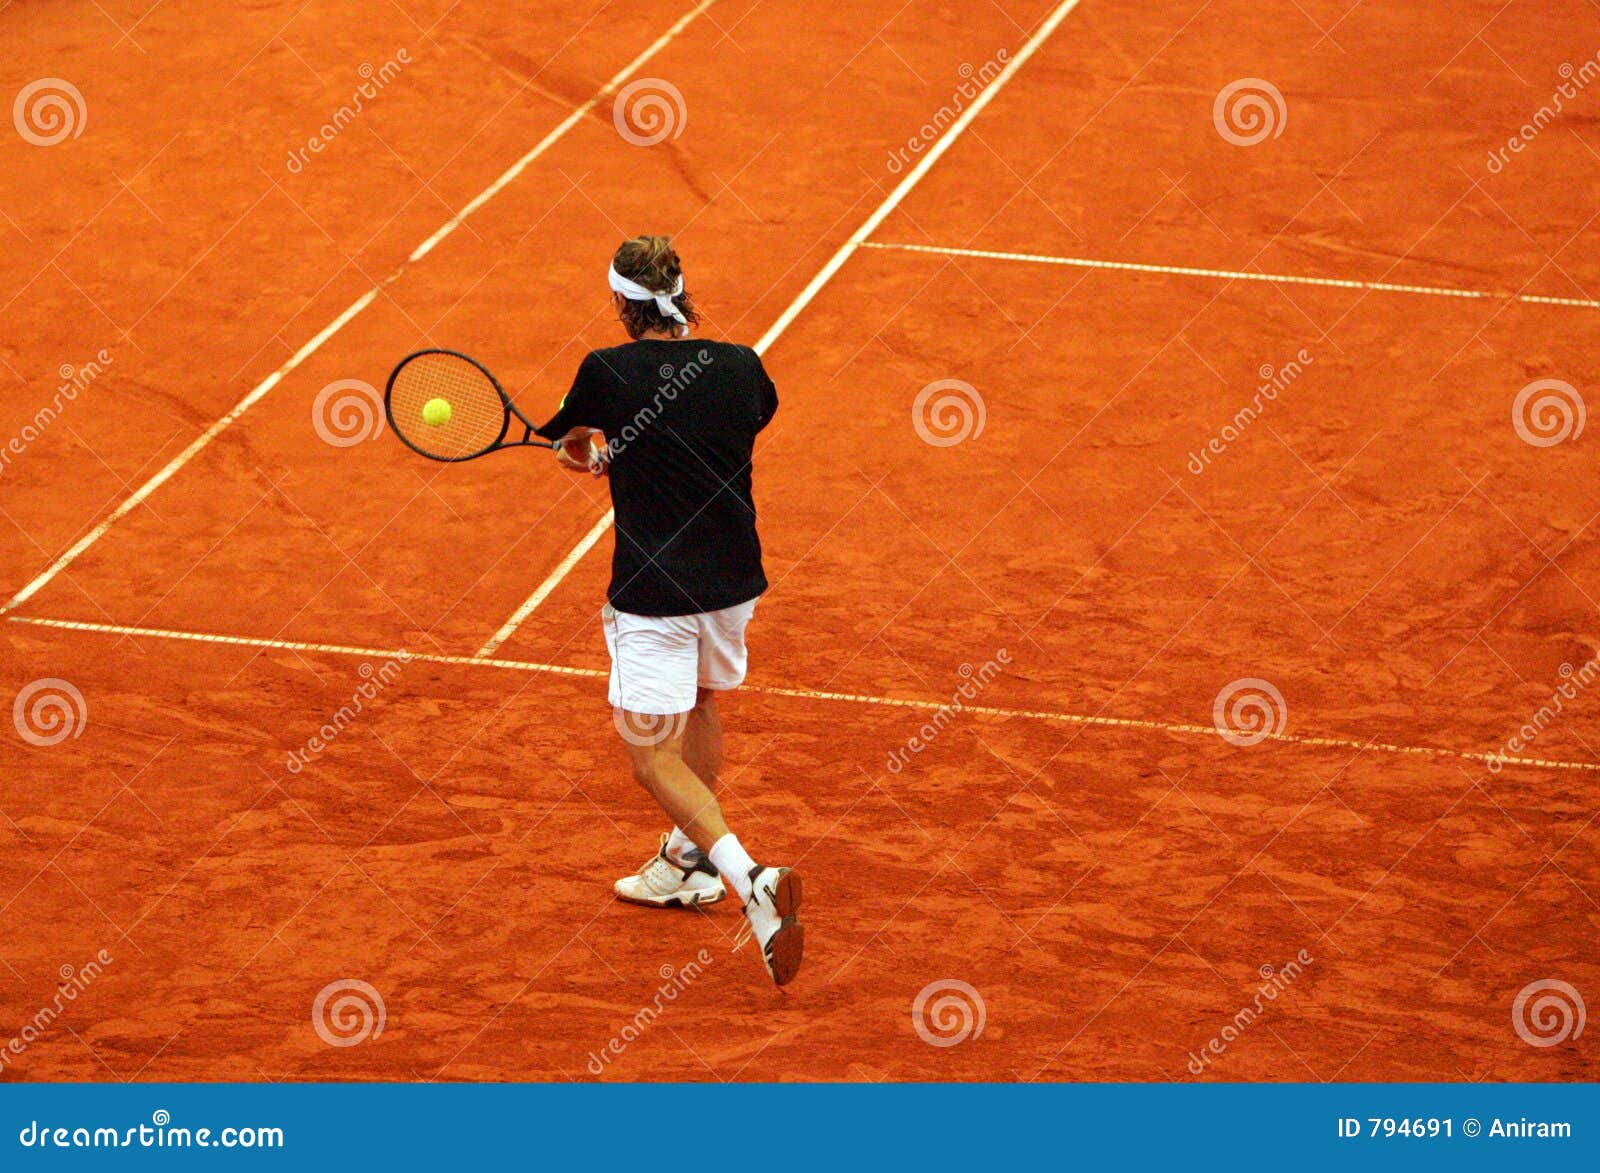 tennis backhand